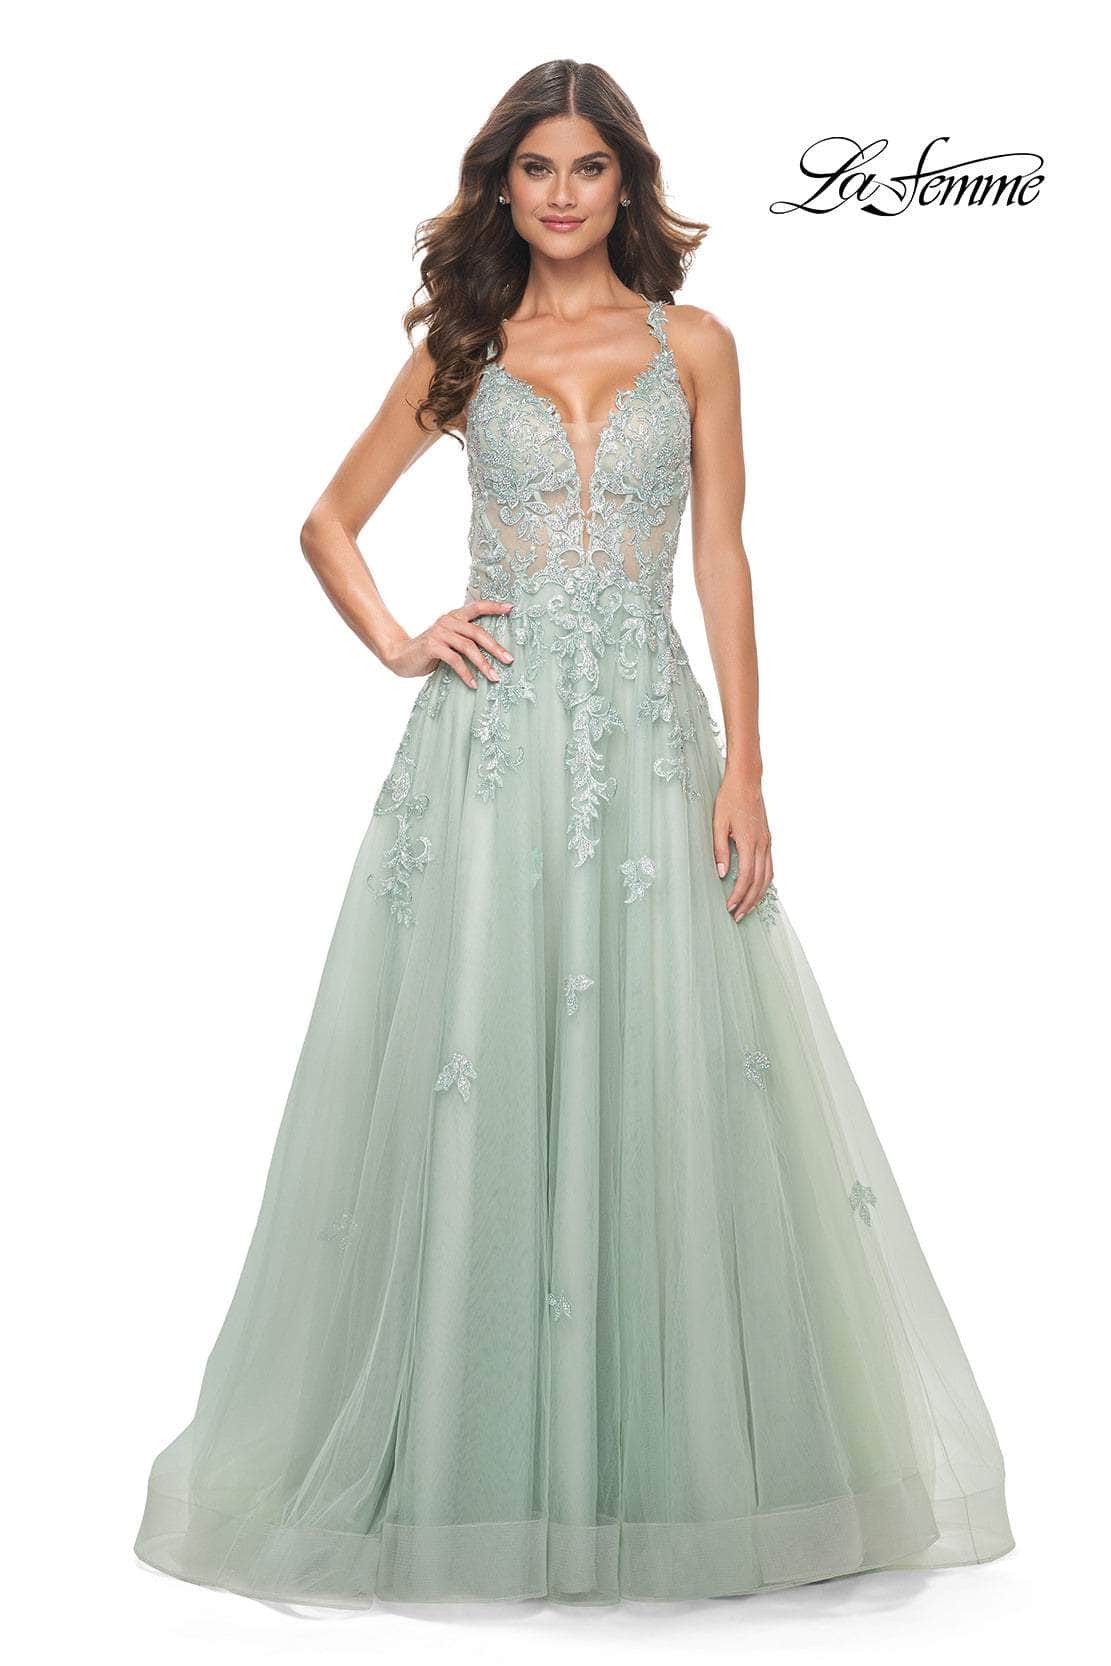 La Femme 32438 - Lace Applique Deep V-Neck Prom Gown
